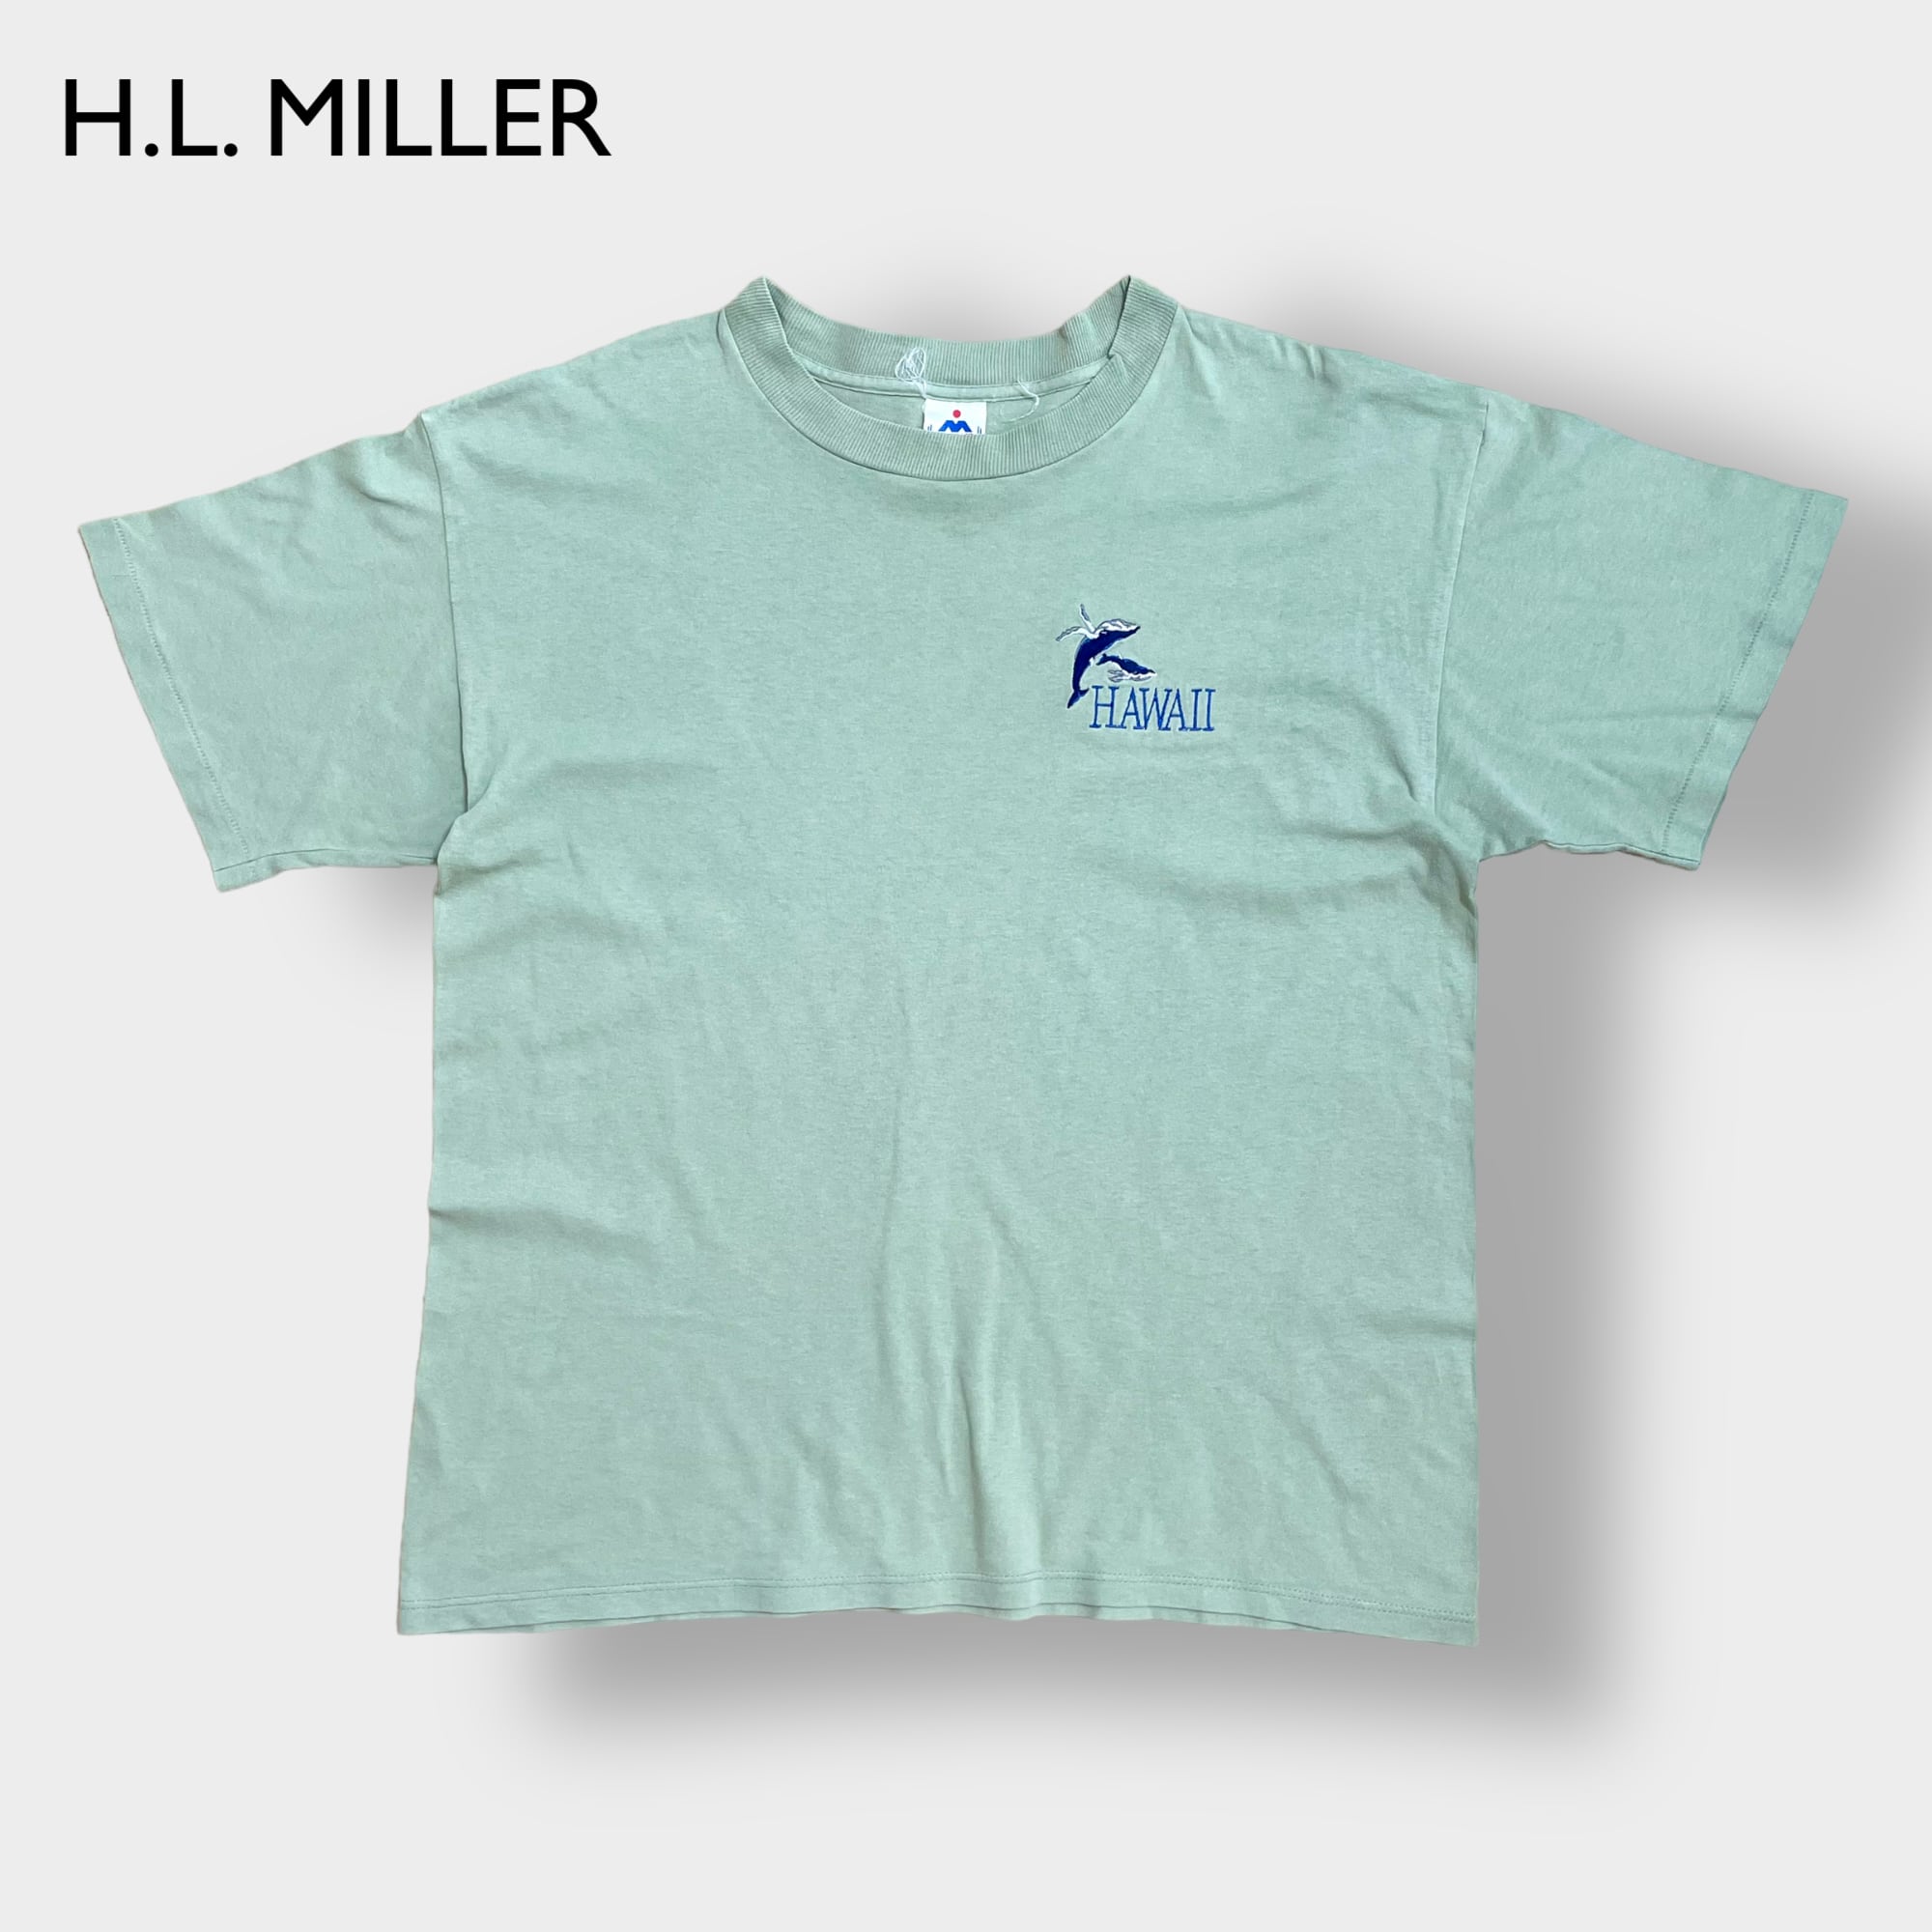 VINTAGE H.L. MILLER USA製 Tシャツ XXL